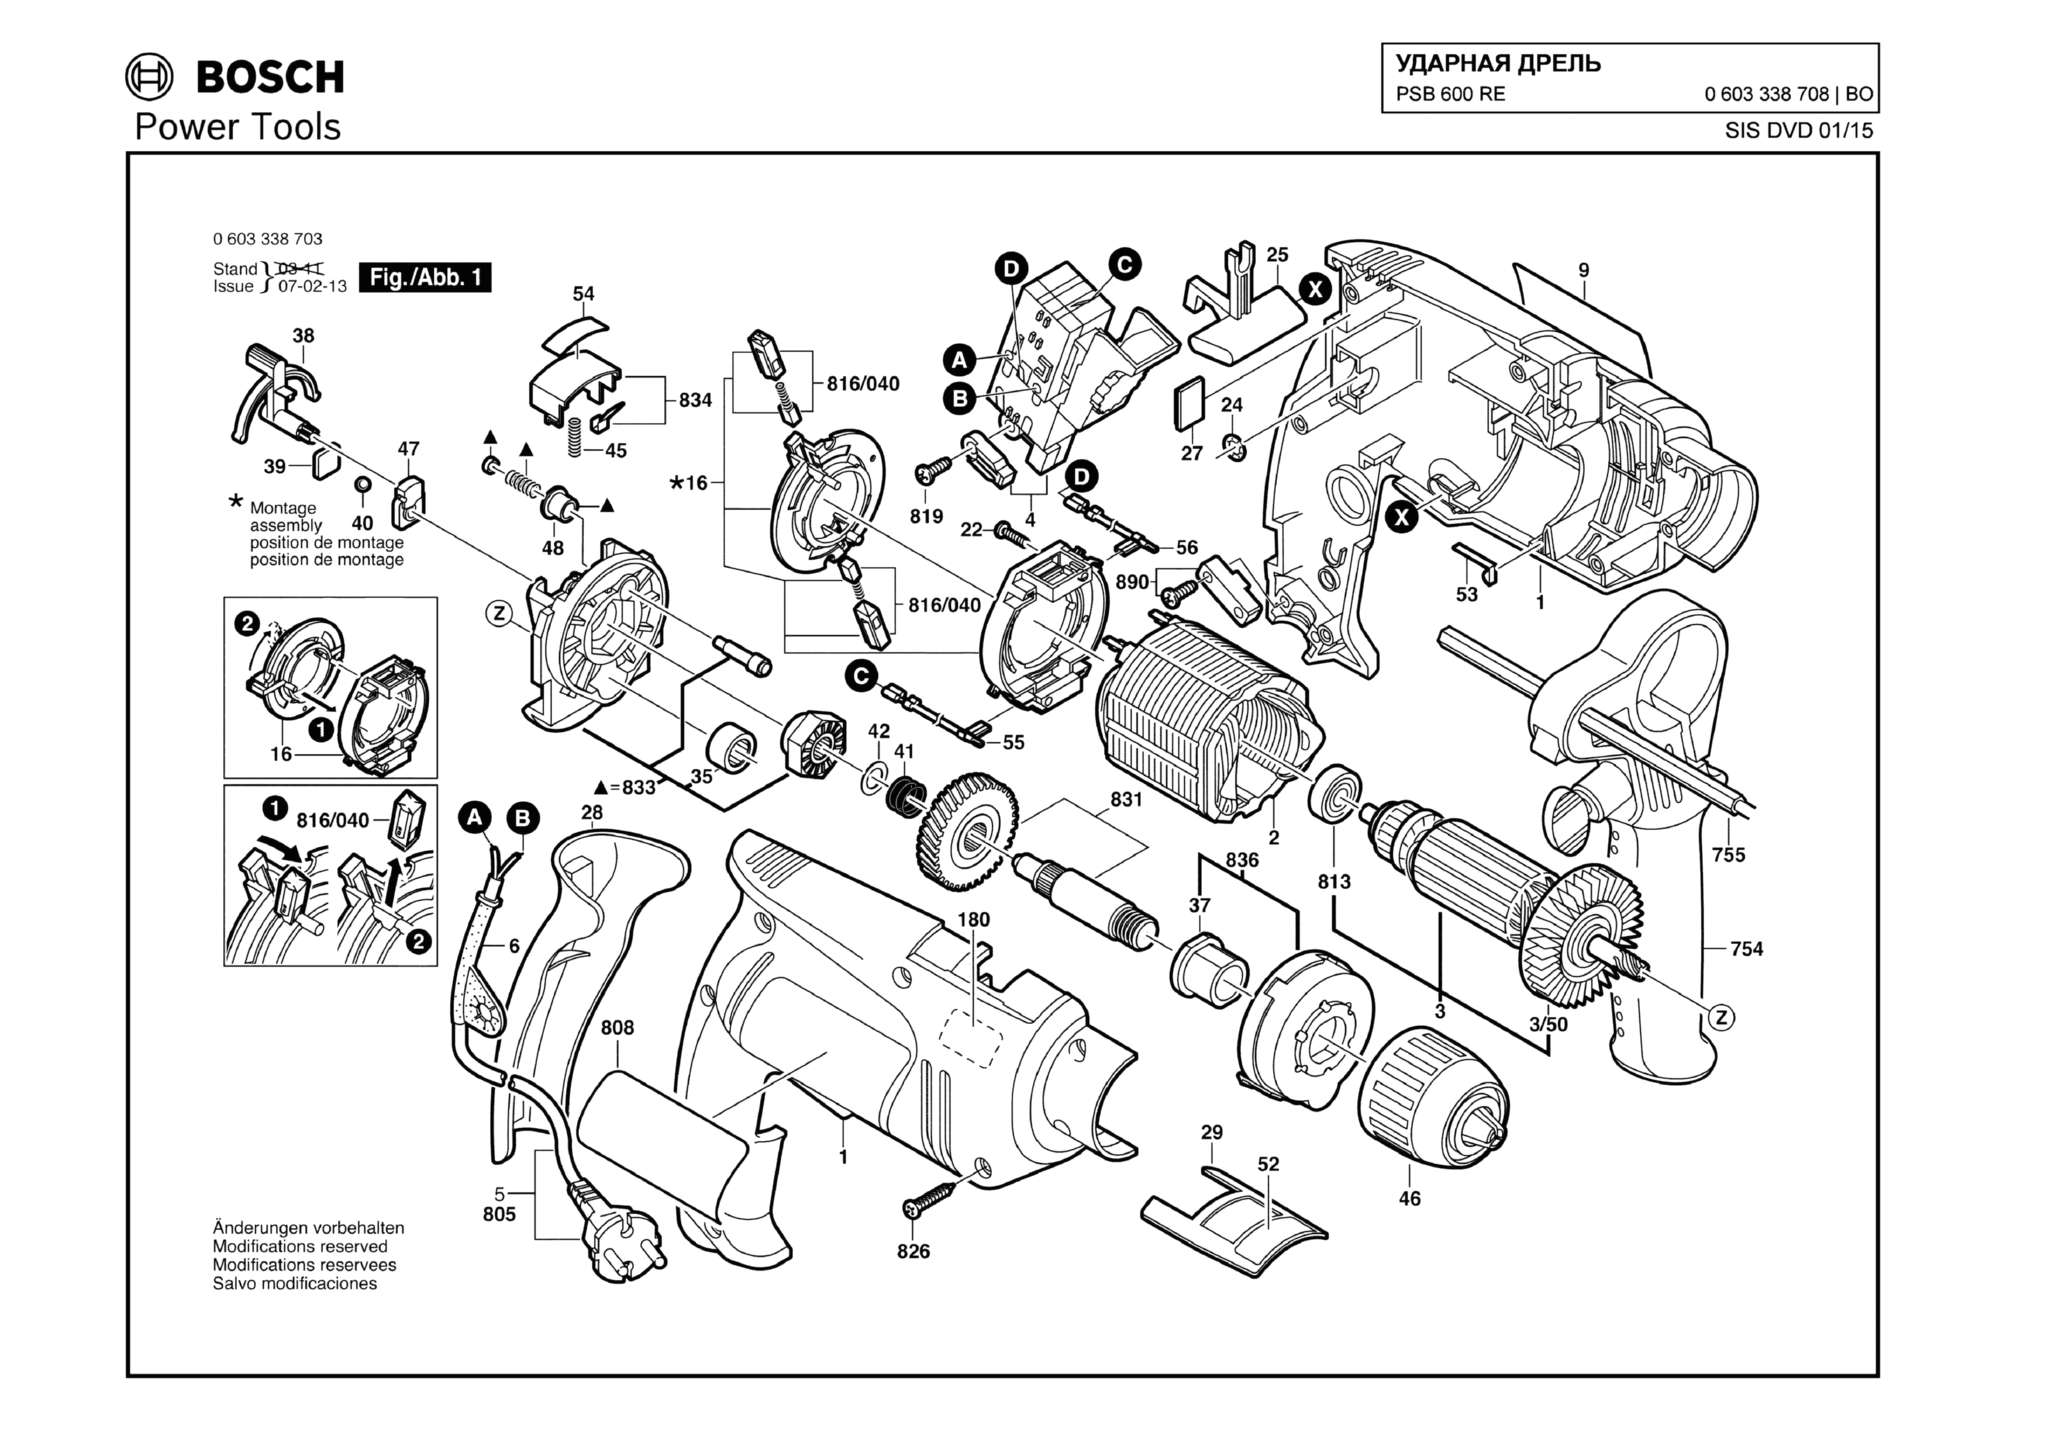 Запчасти, схема и деталировка Bosch PSB 600 RE (ТИП 0603338708)